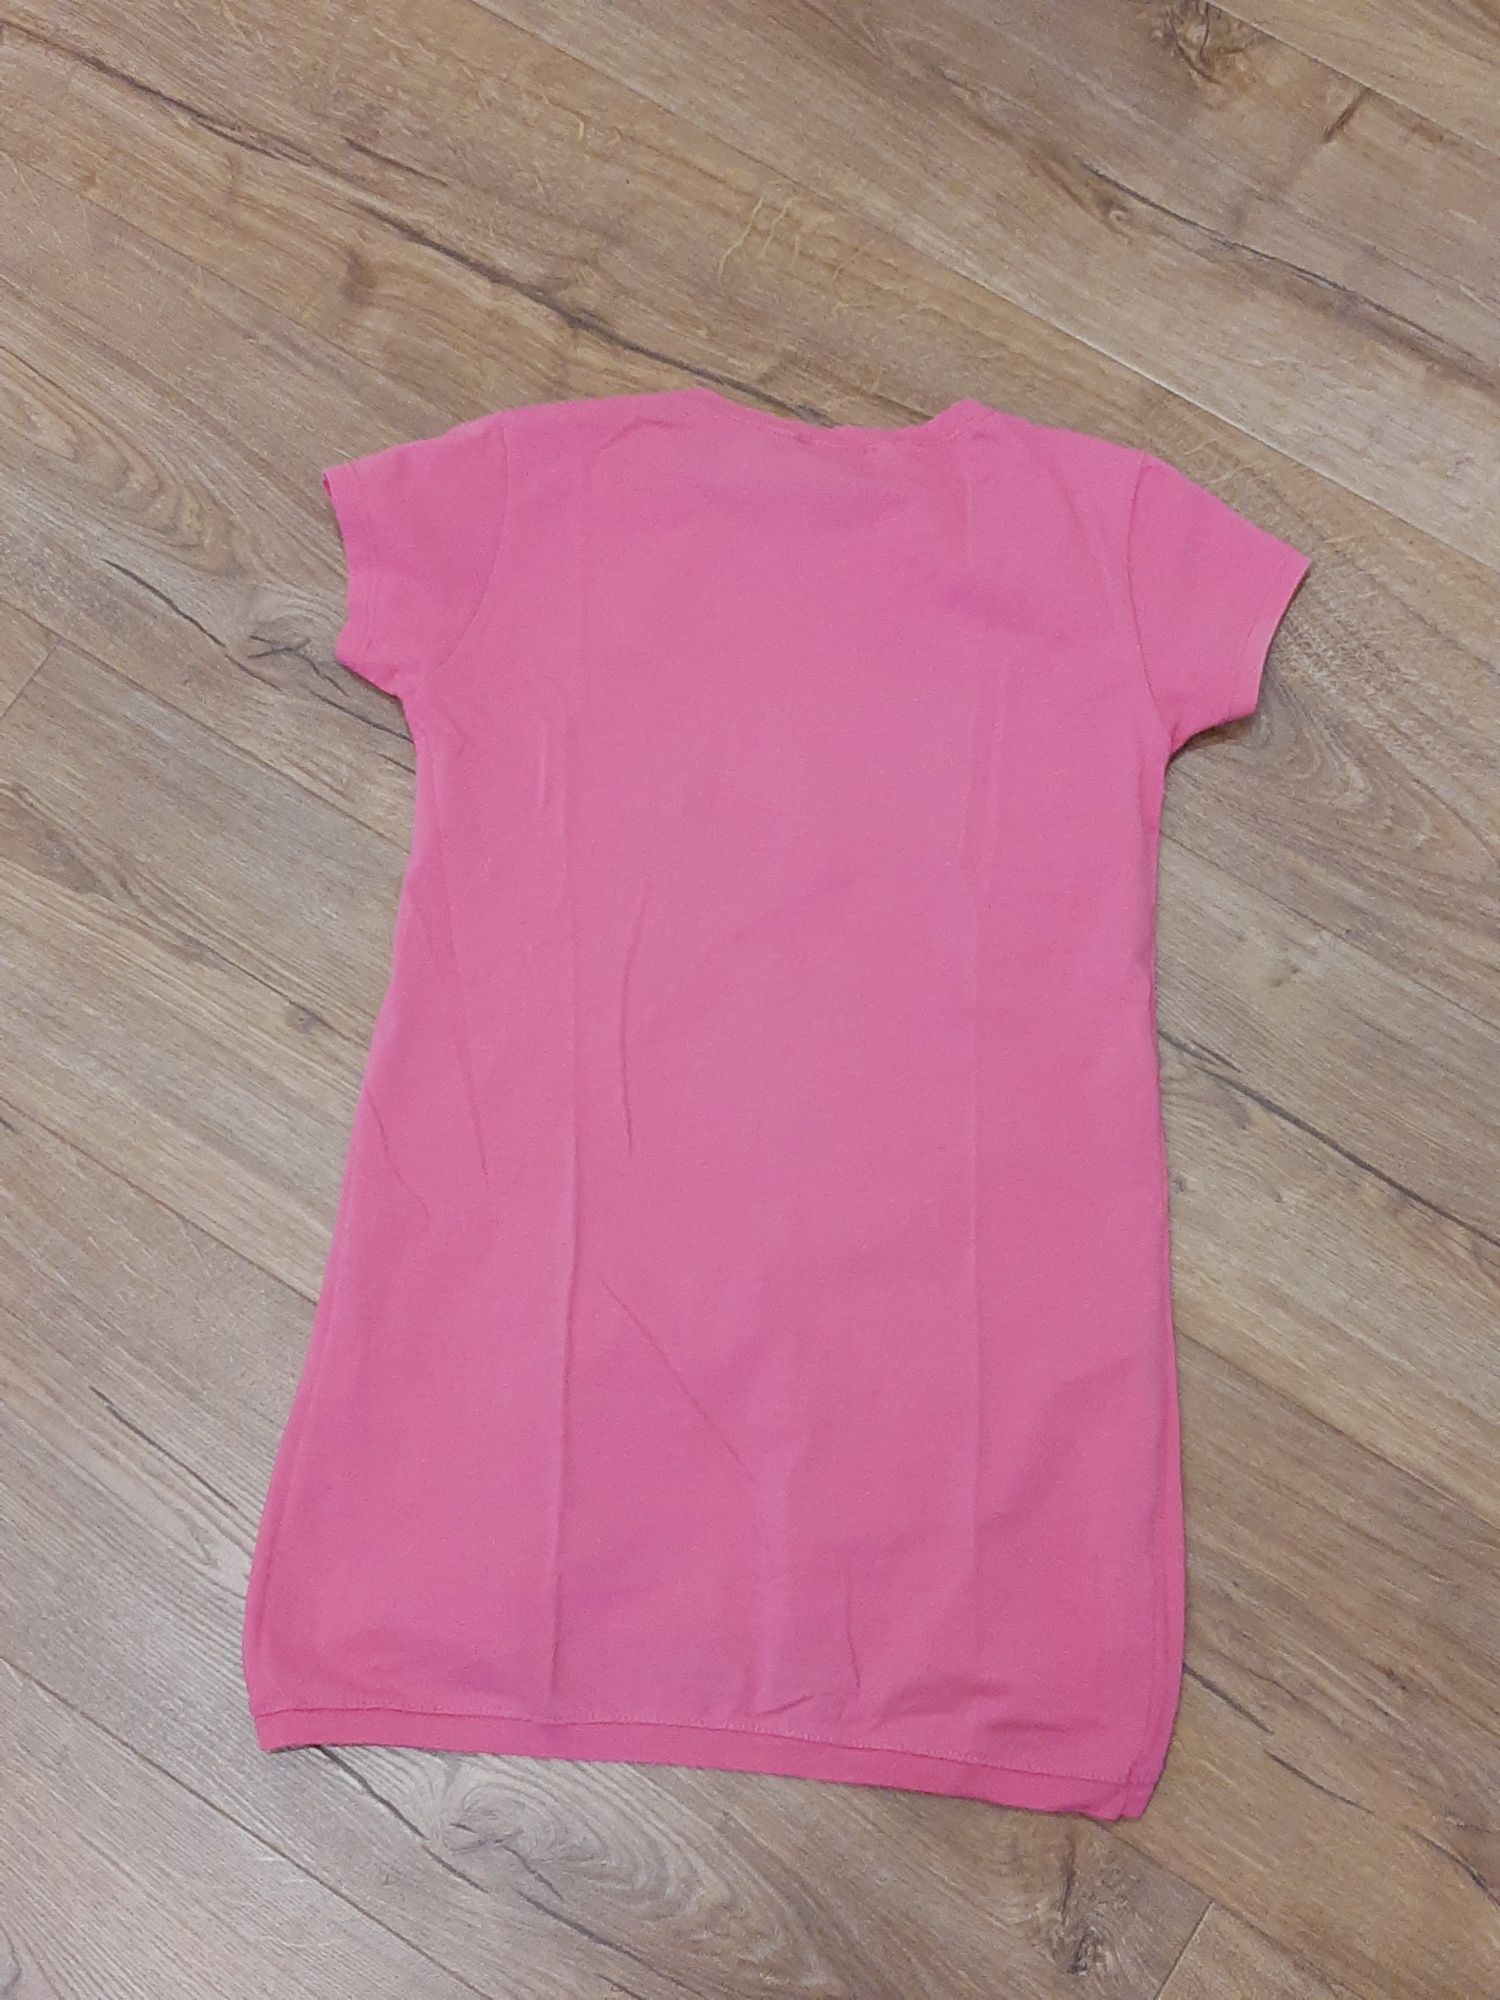 Koszulka dziewczęca różowa r.158/164 12/13l.